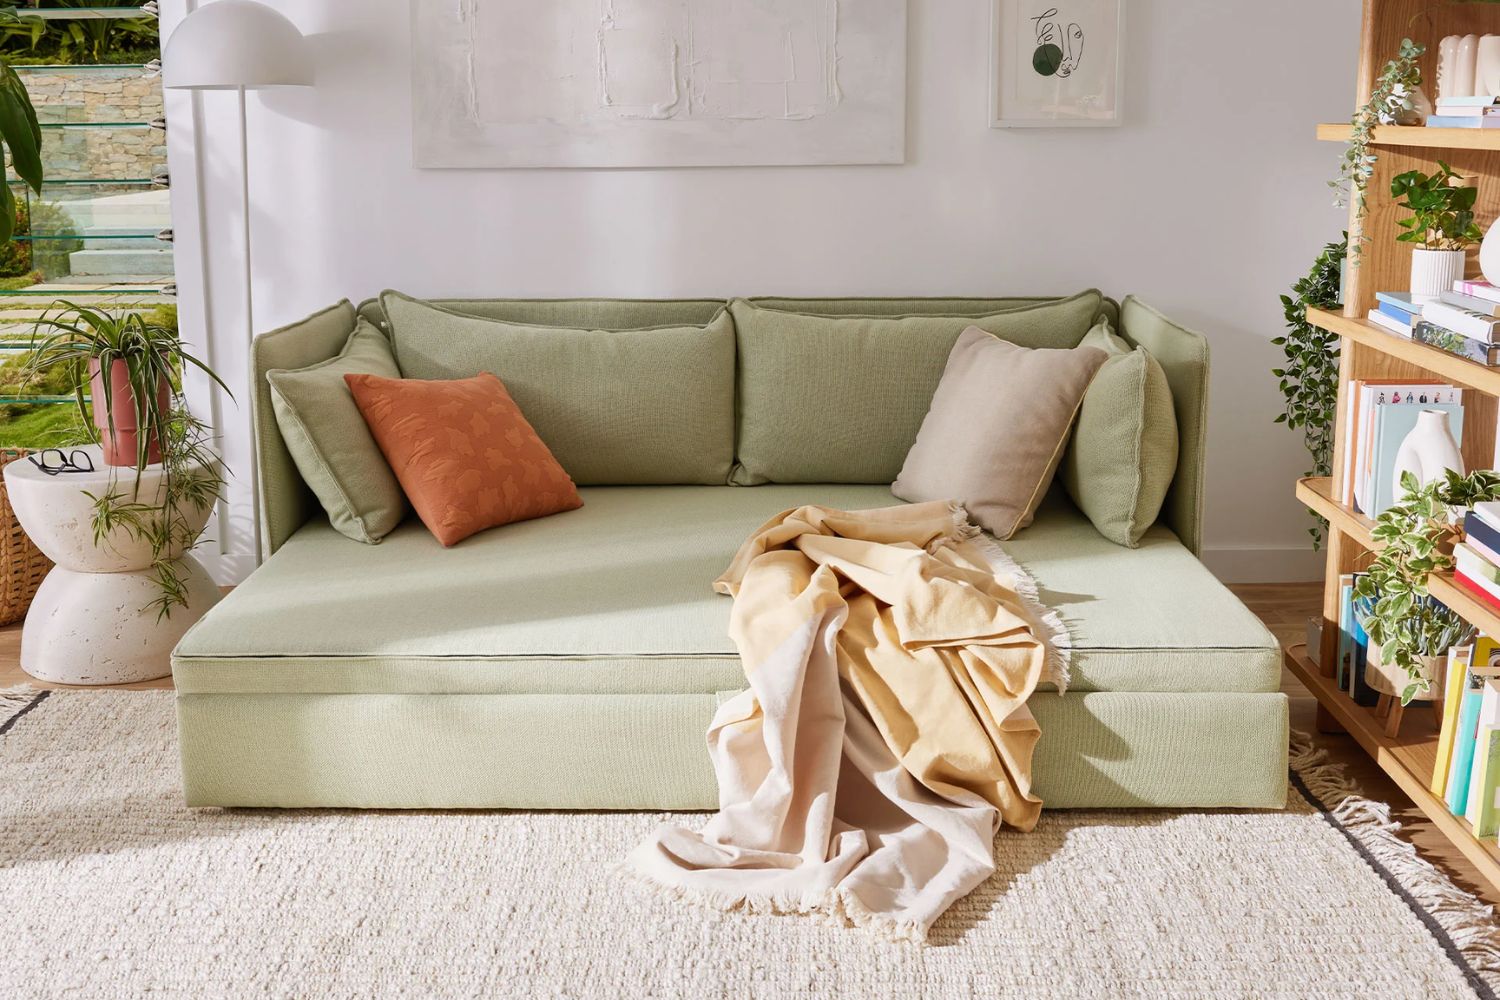 fold out sofa beds australia